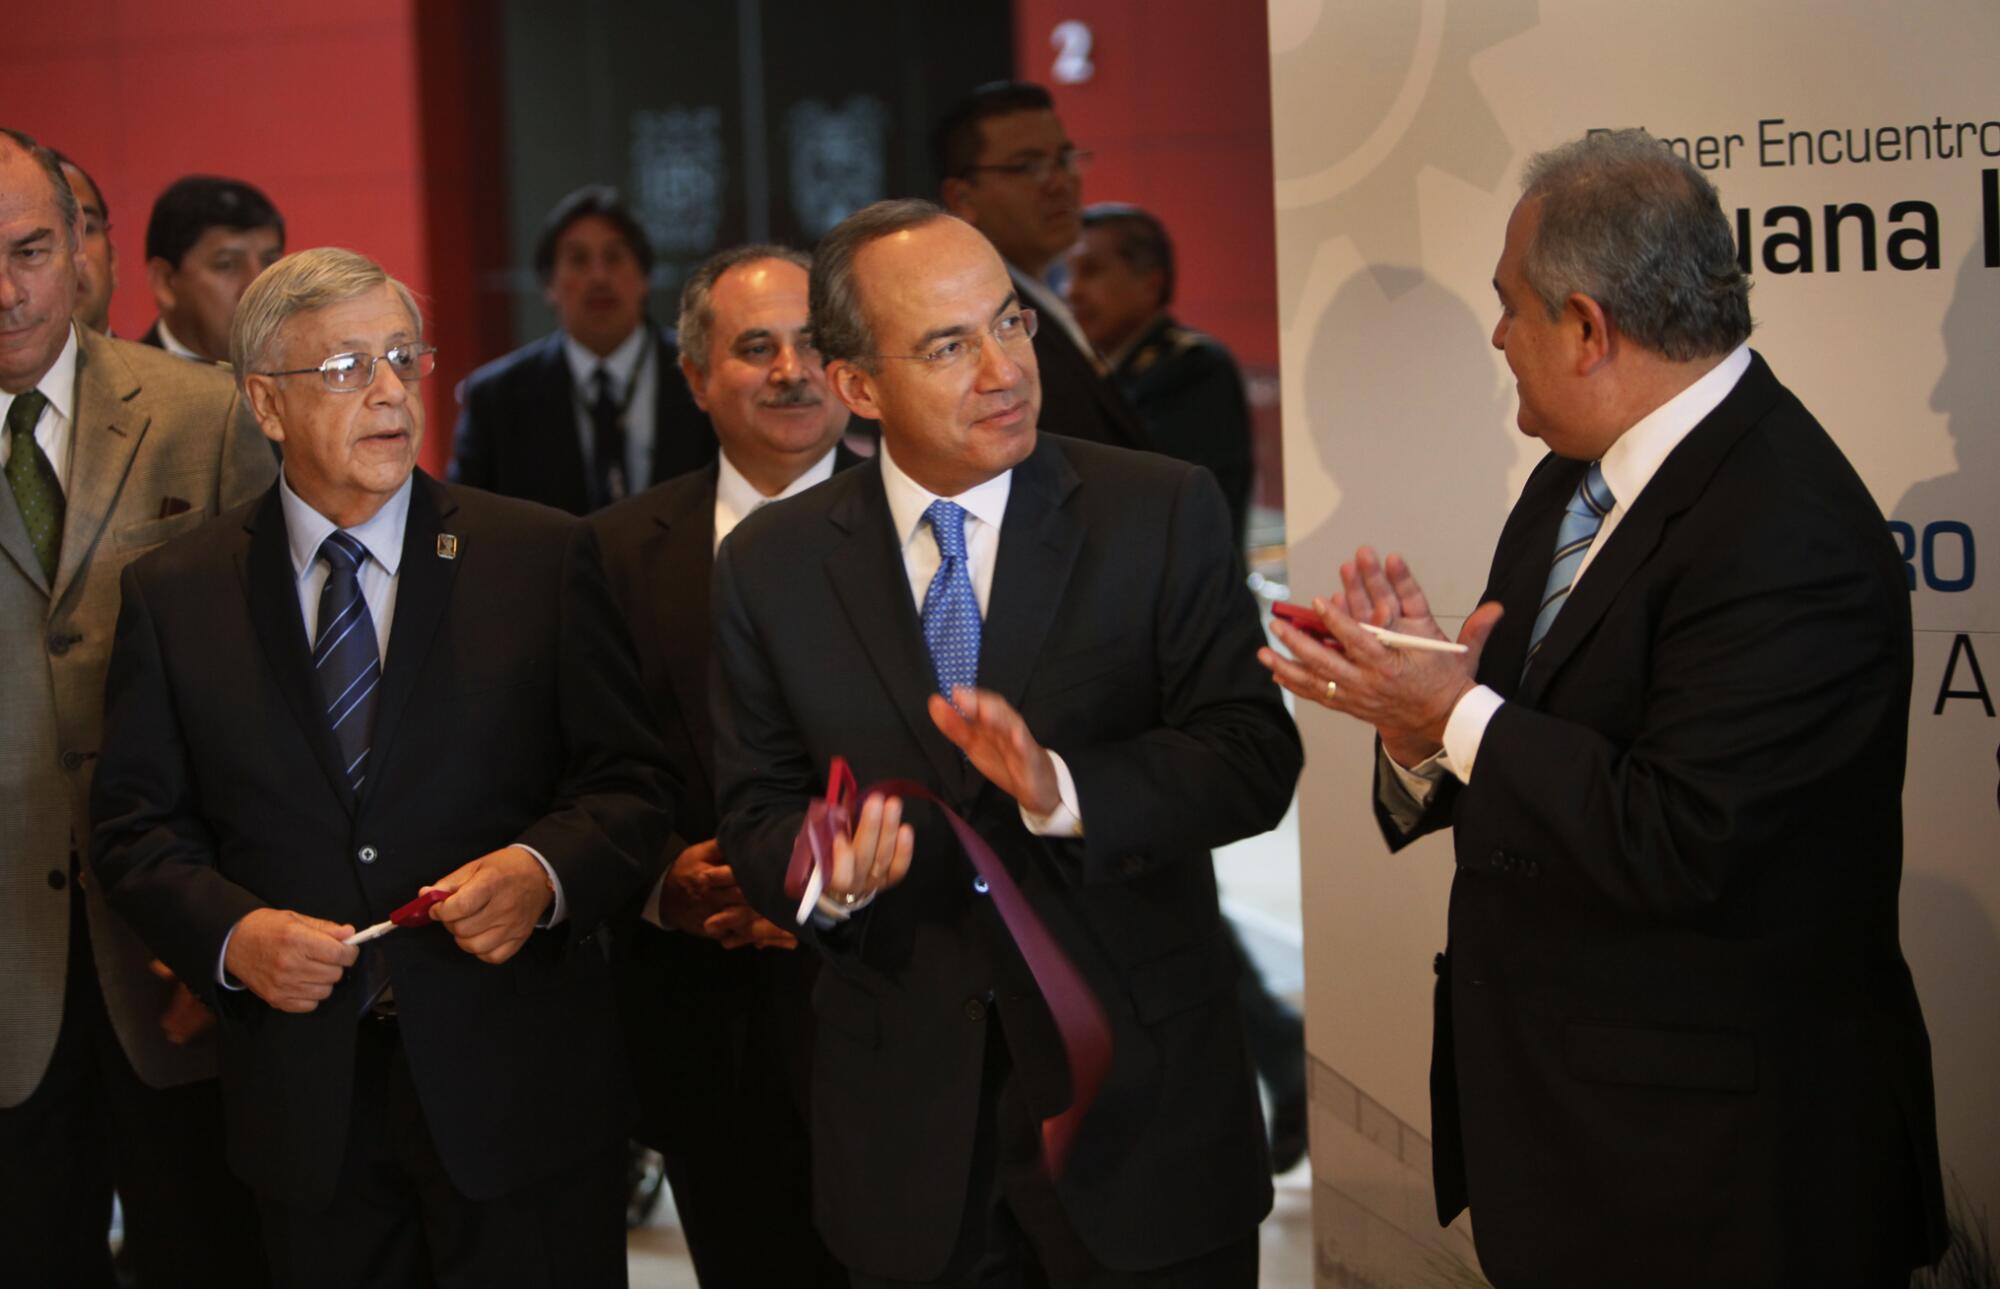 El presidente mexicano Felipe Calderón, en el centro, corta la cinta para inaugurar la conferencia 